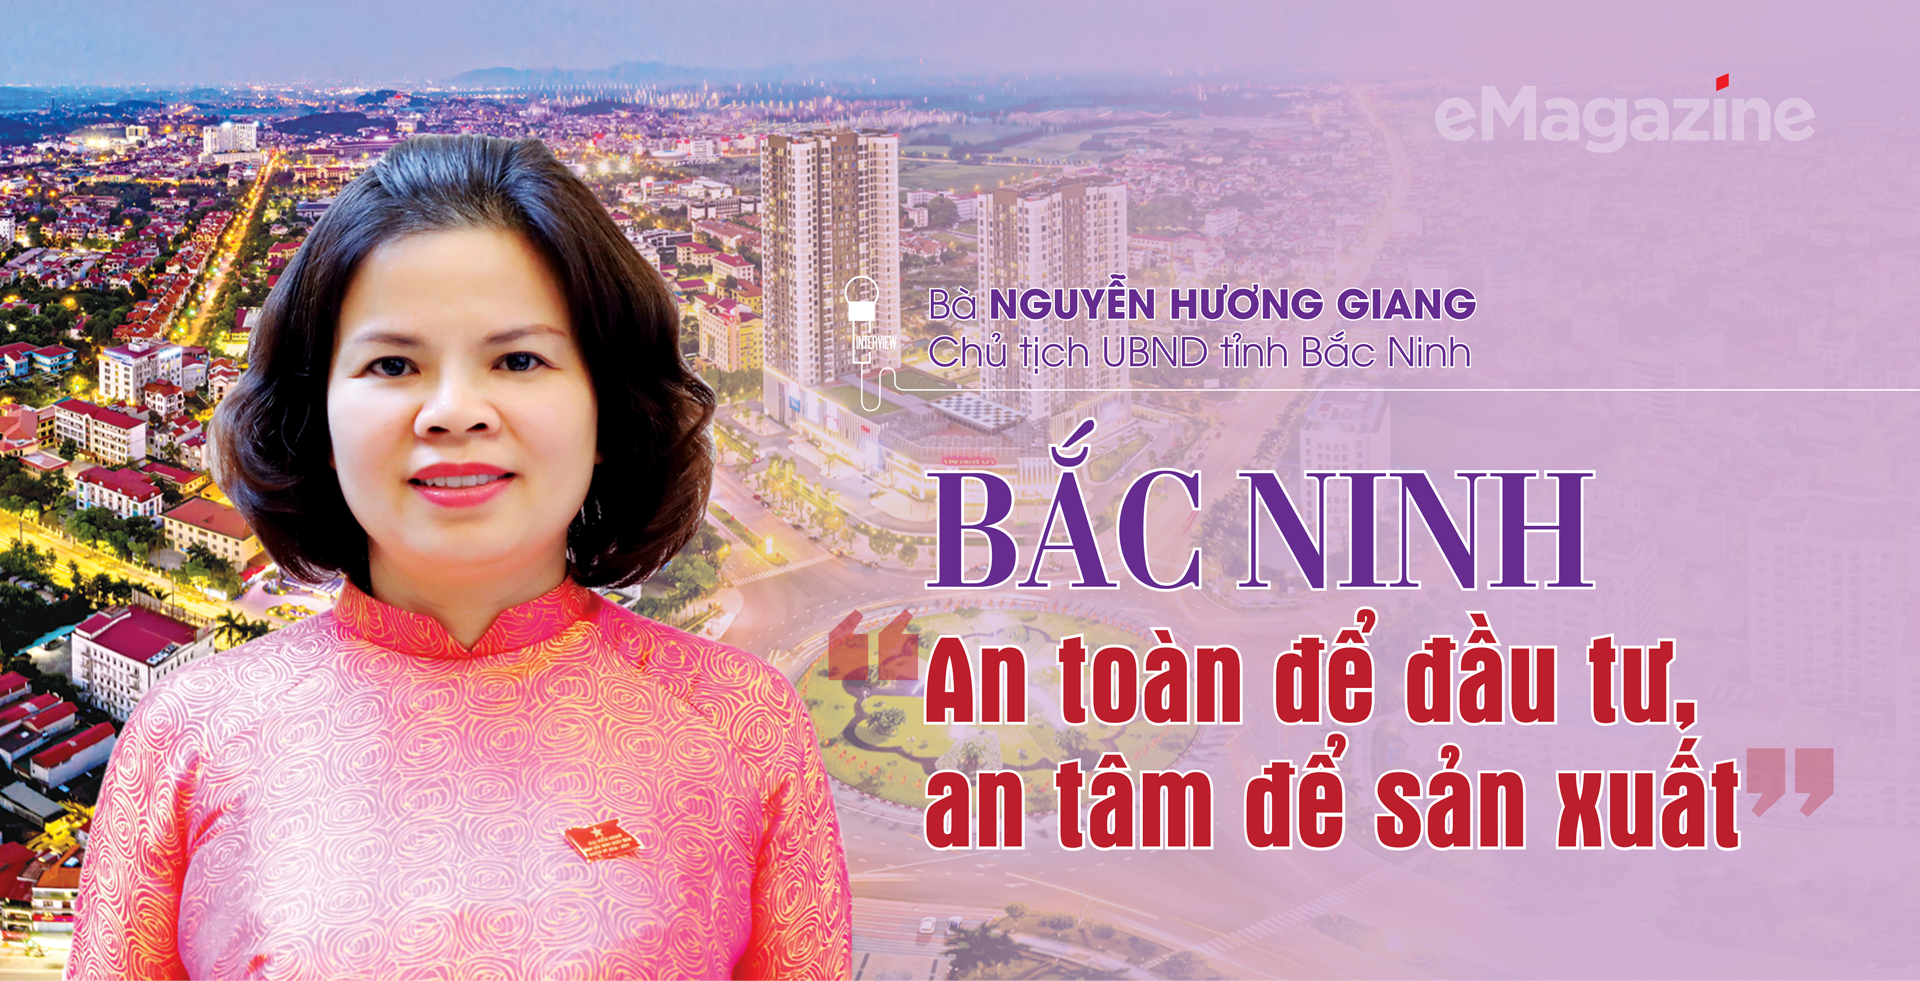 Bắc Ninh: “An toàn để đầu tư, an tâm để sản xuất” - Ảnh 1